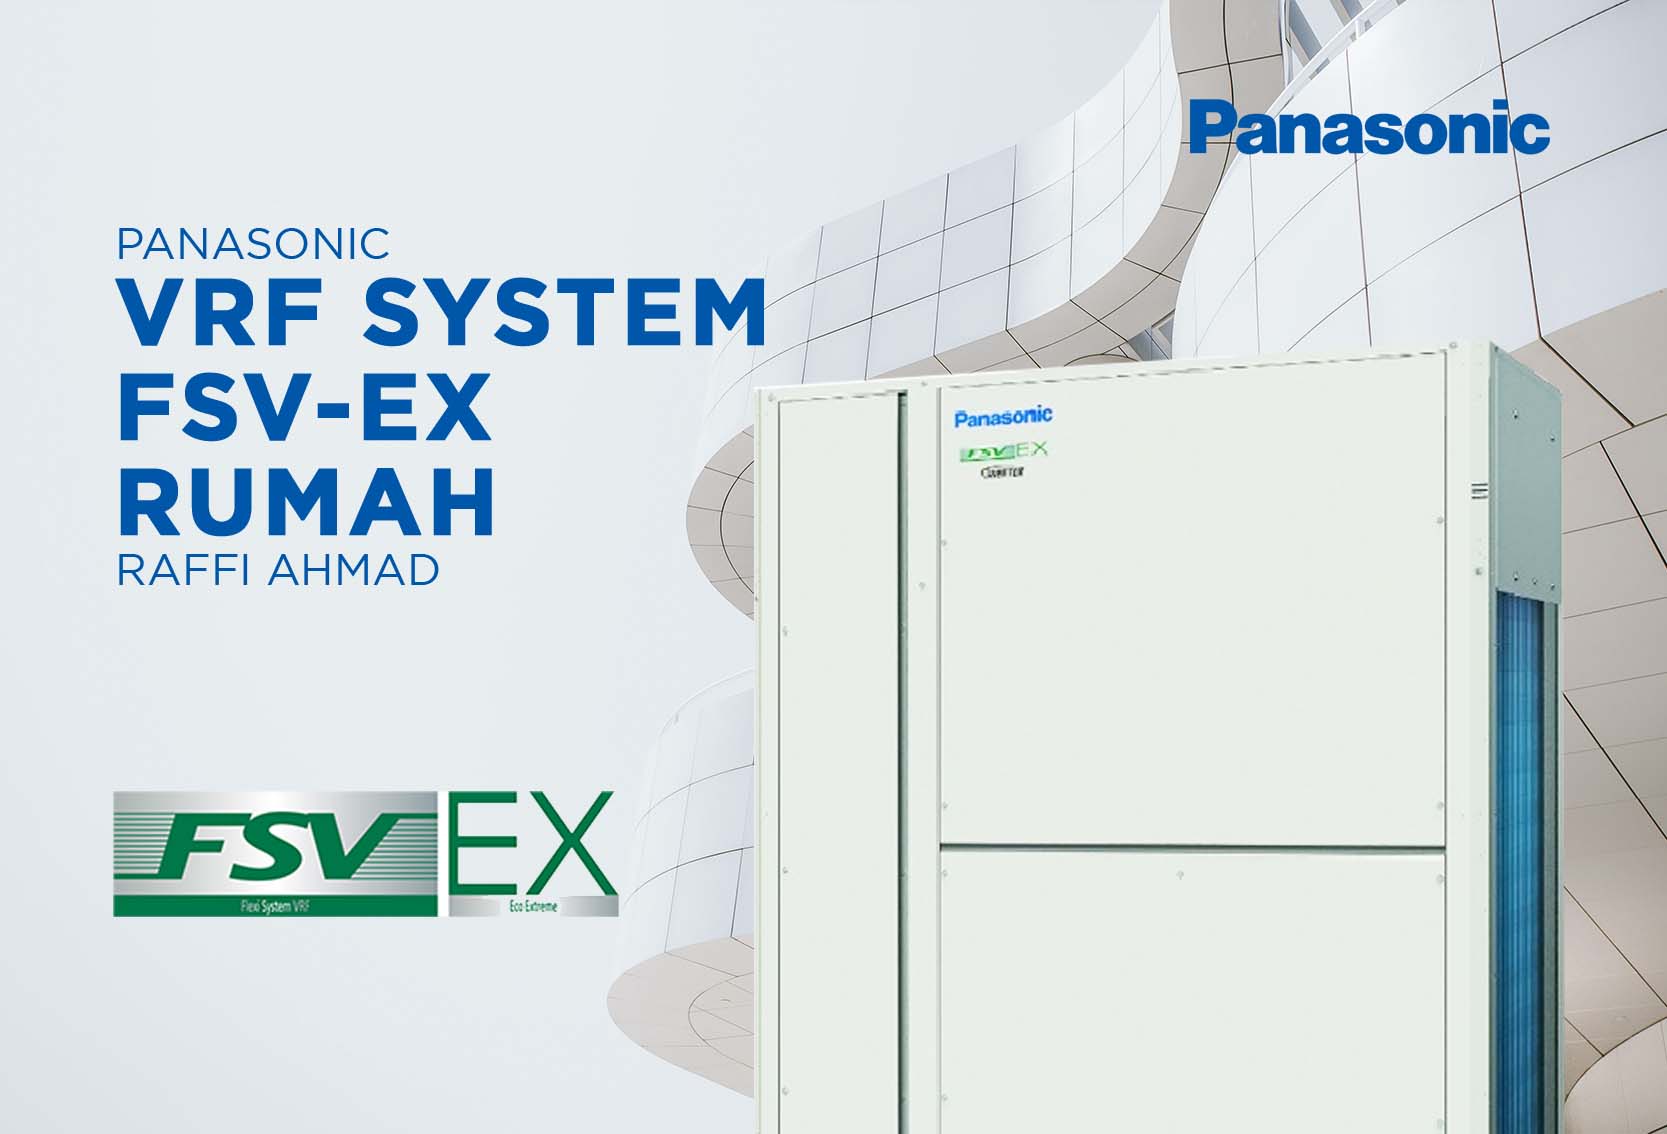 PANASONIC VRF SYSTEM FSV-EX RUMAH RAFFI AHMAD